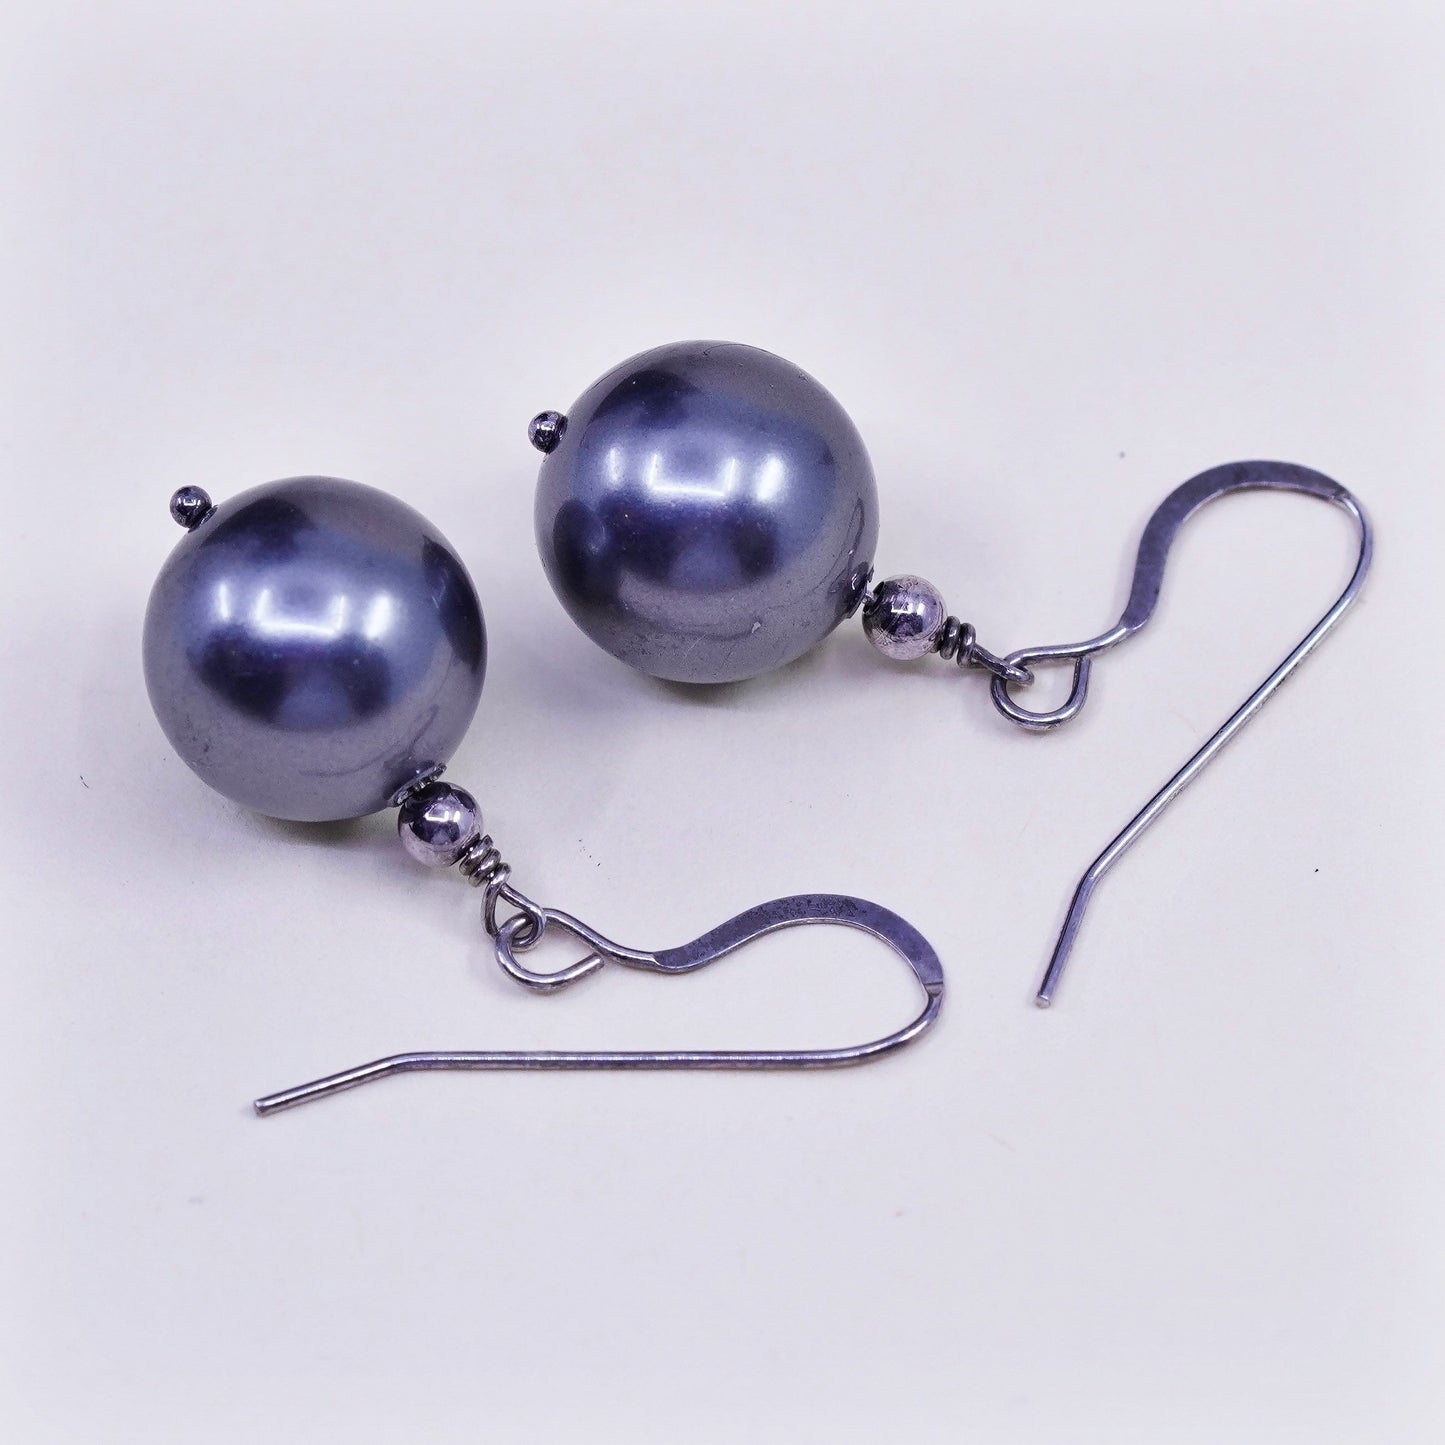 Vintage Sterling 925 silver handmade earrings with black pearl drop